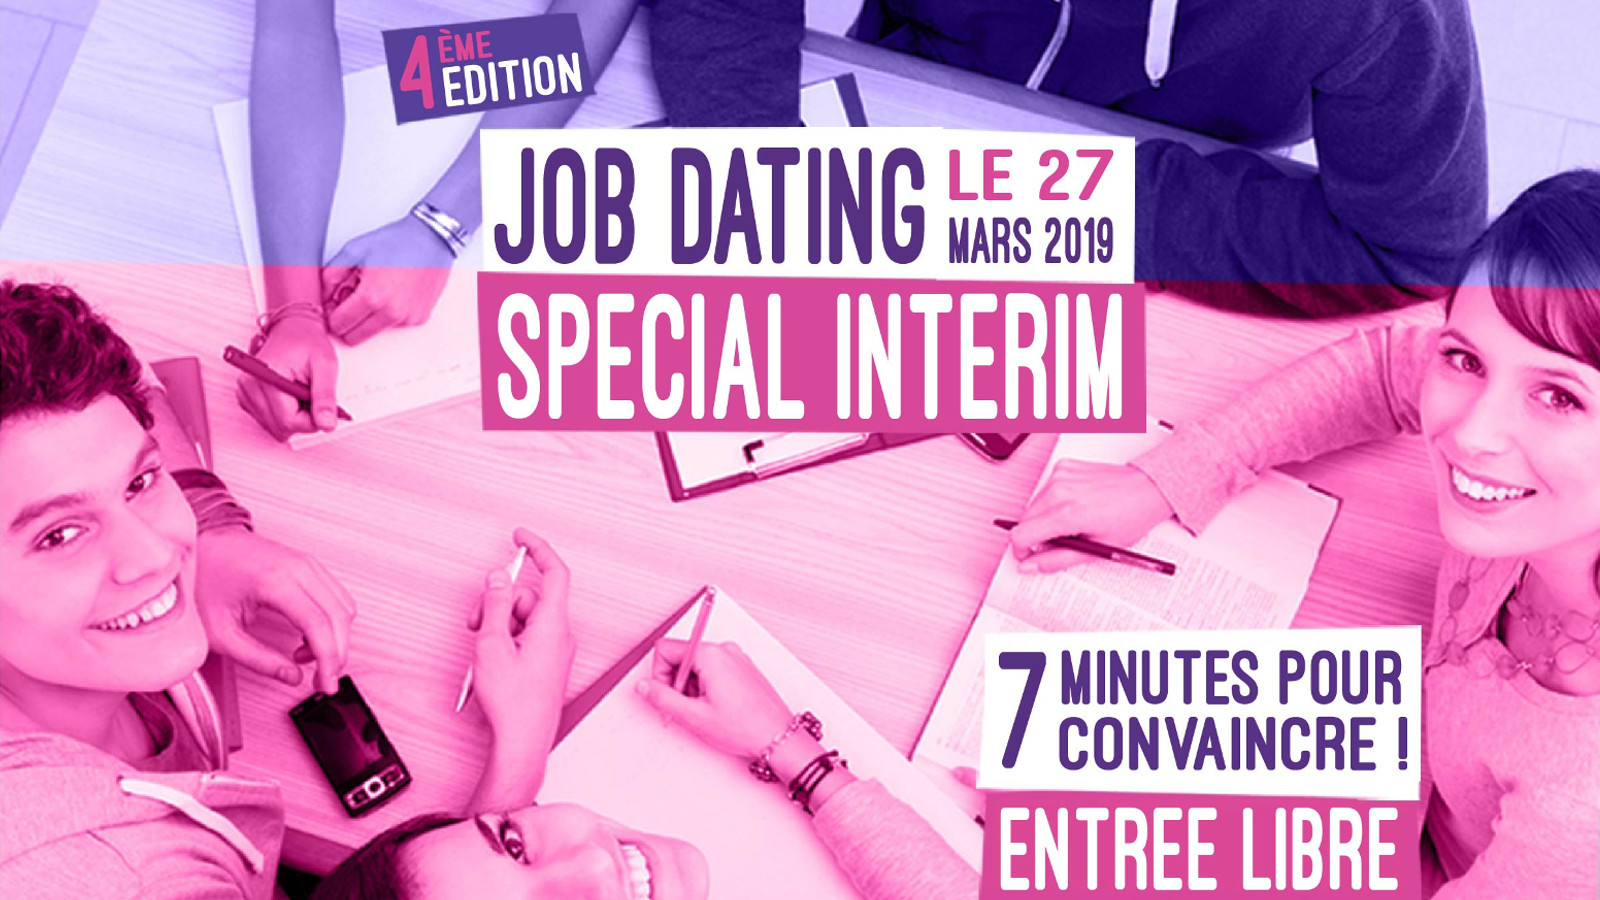 Speed dating pour trouver un job